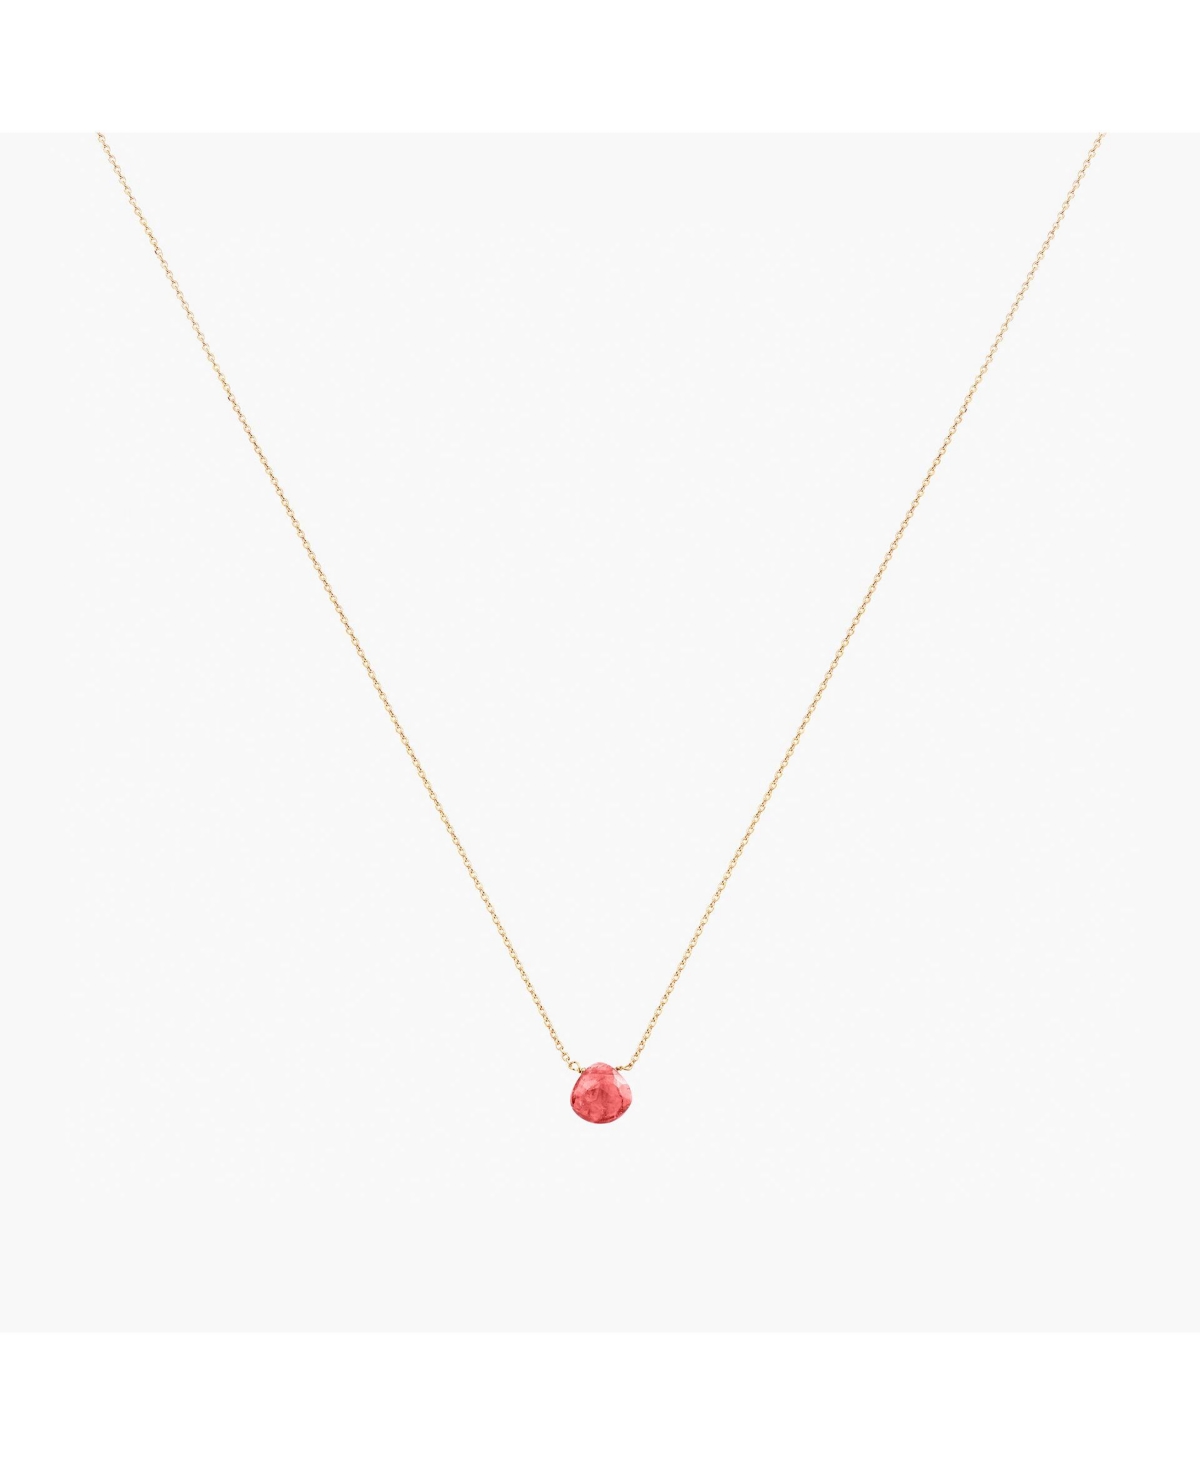 Gemstone Necklace - Pink rhodolite